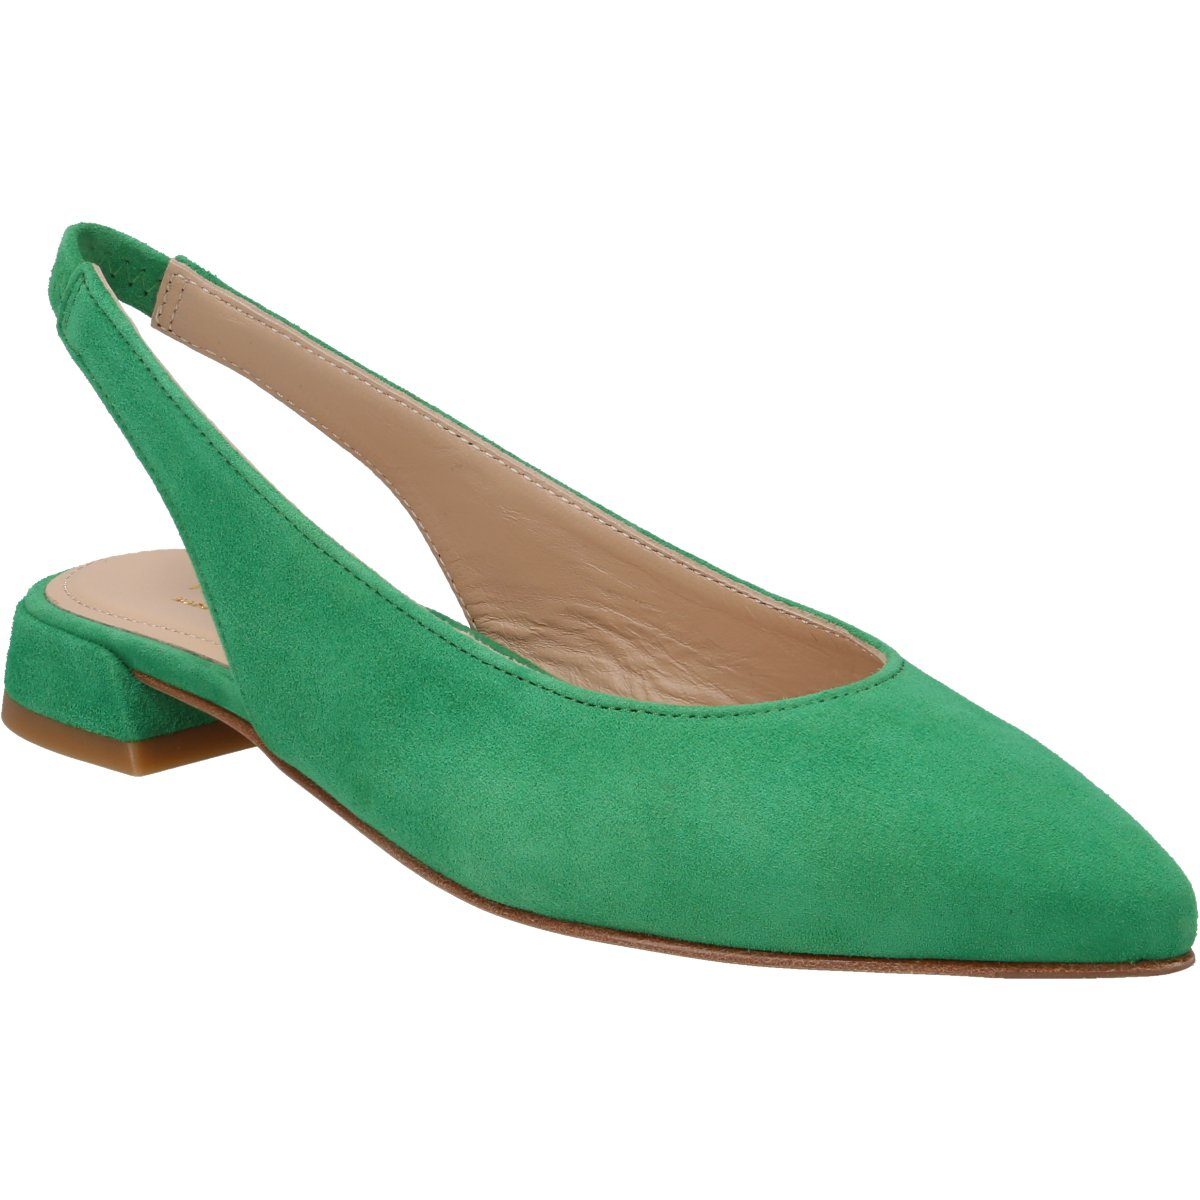 Grüne Lederpumps für Damen online kaufen | OTTO